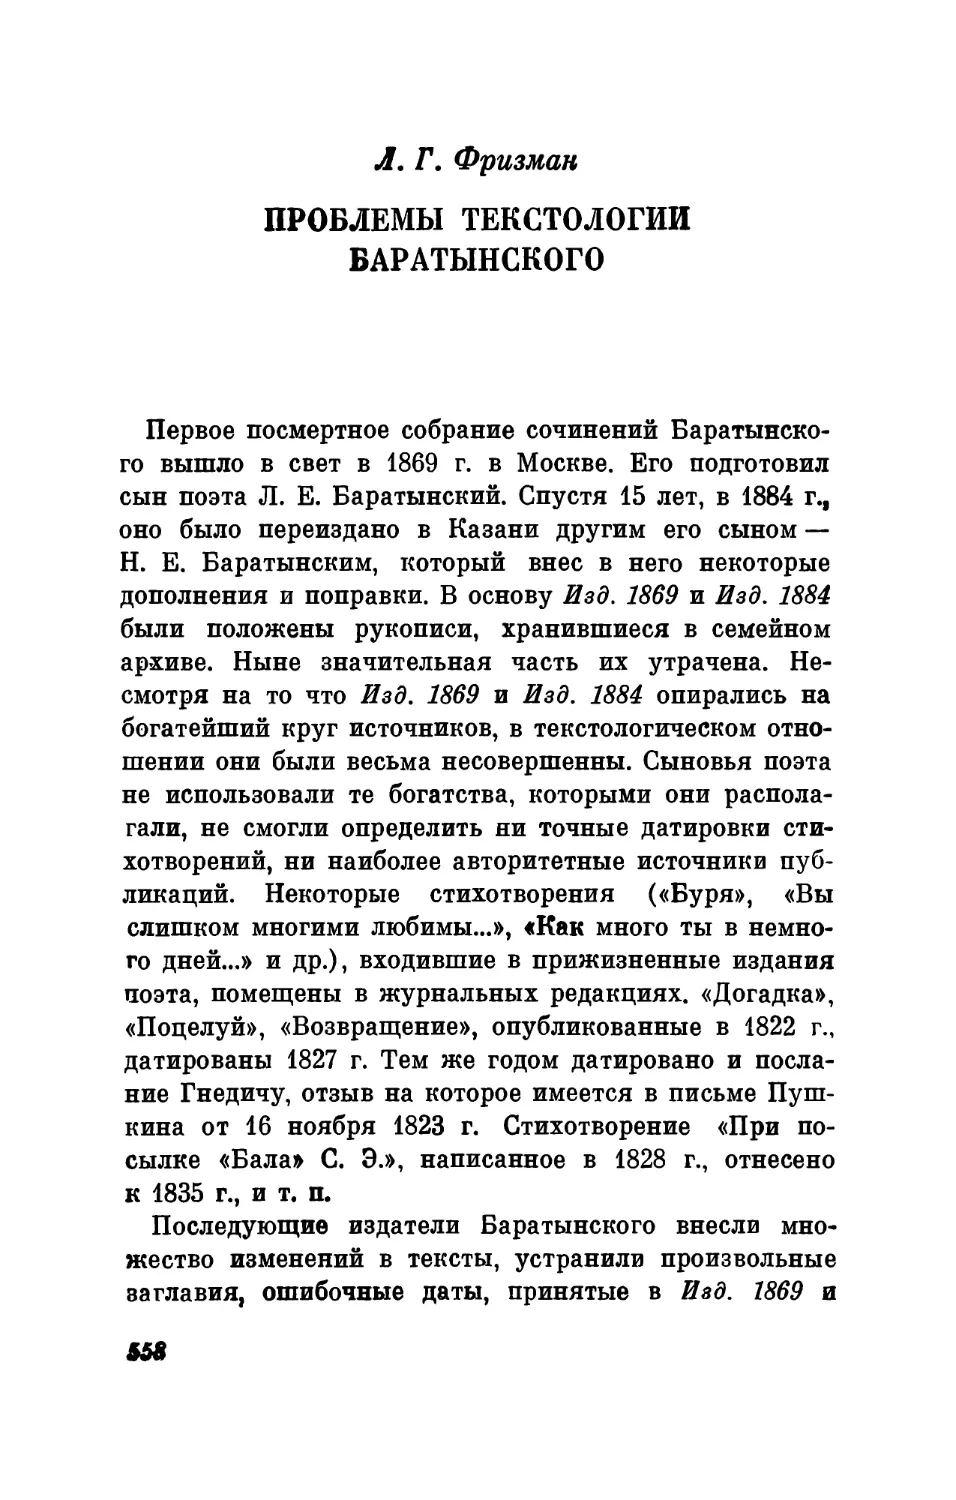 Л. Г. Фризман. Проблемы текстологии Баратынского